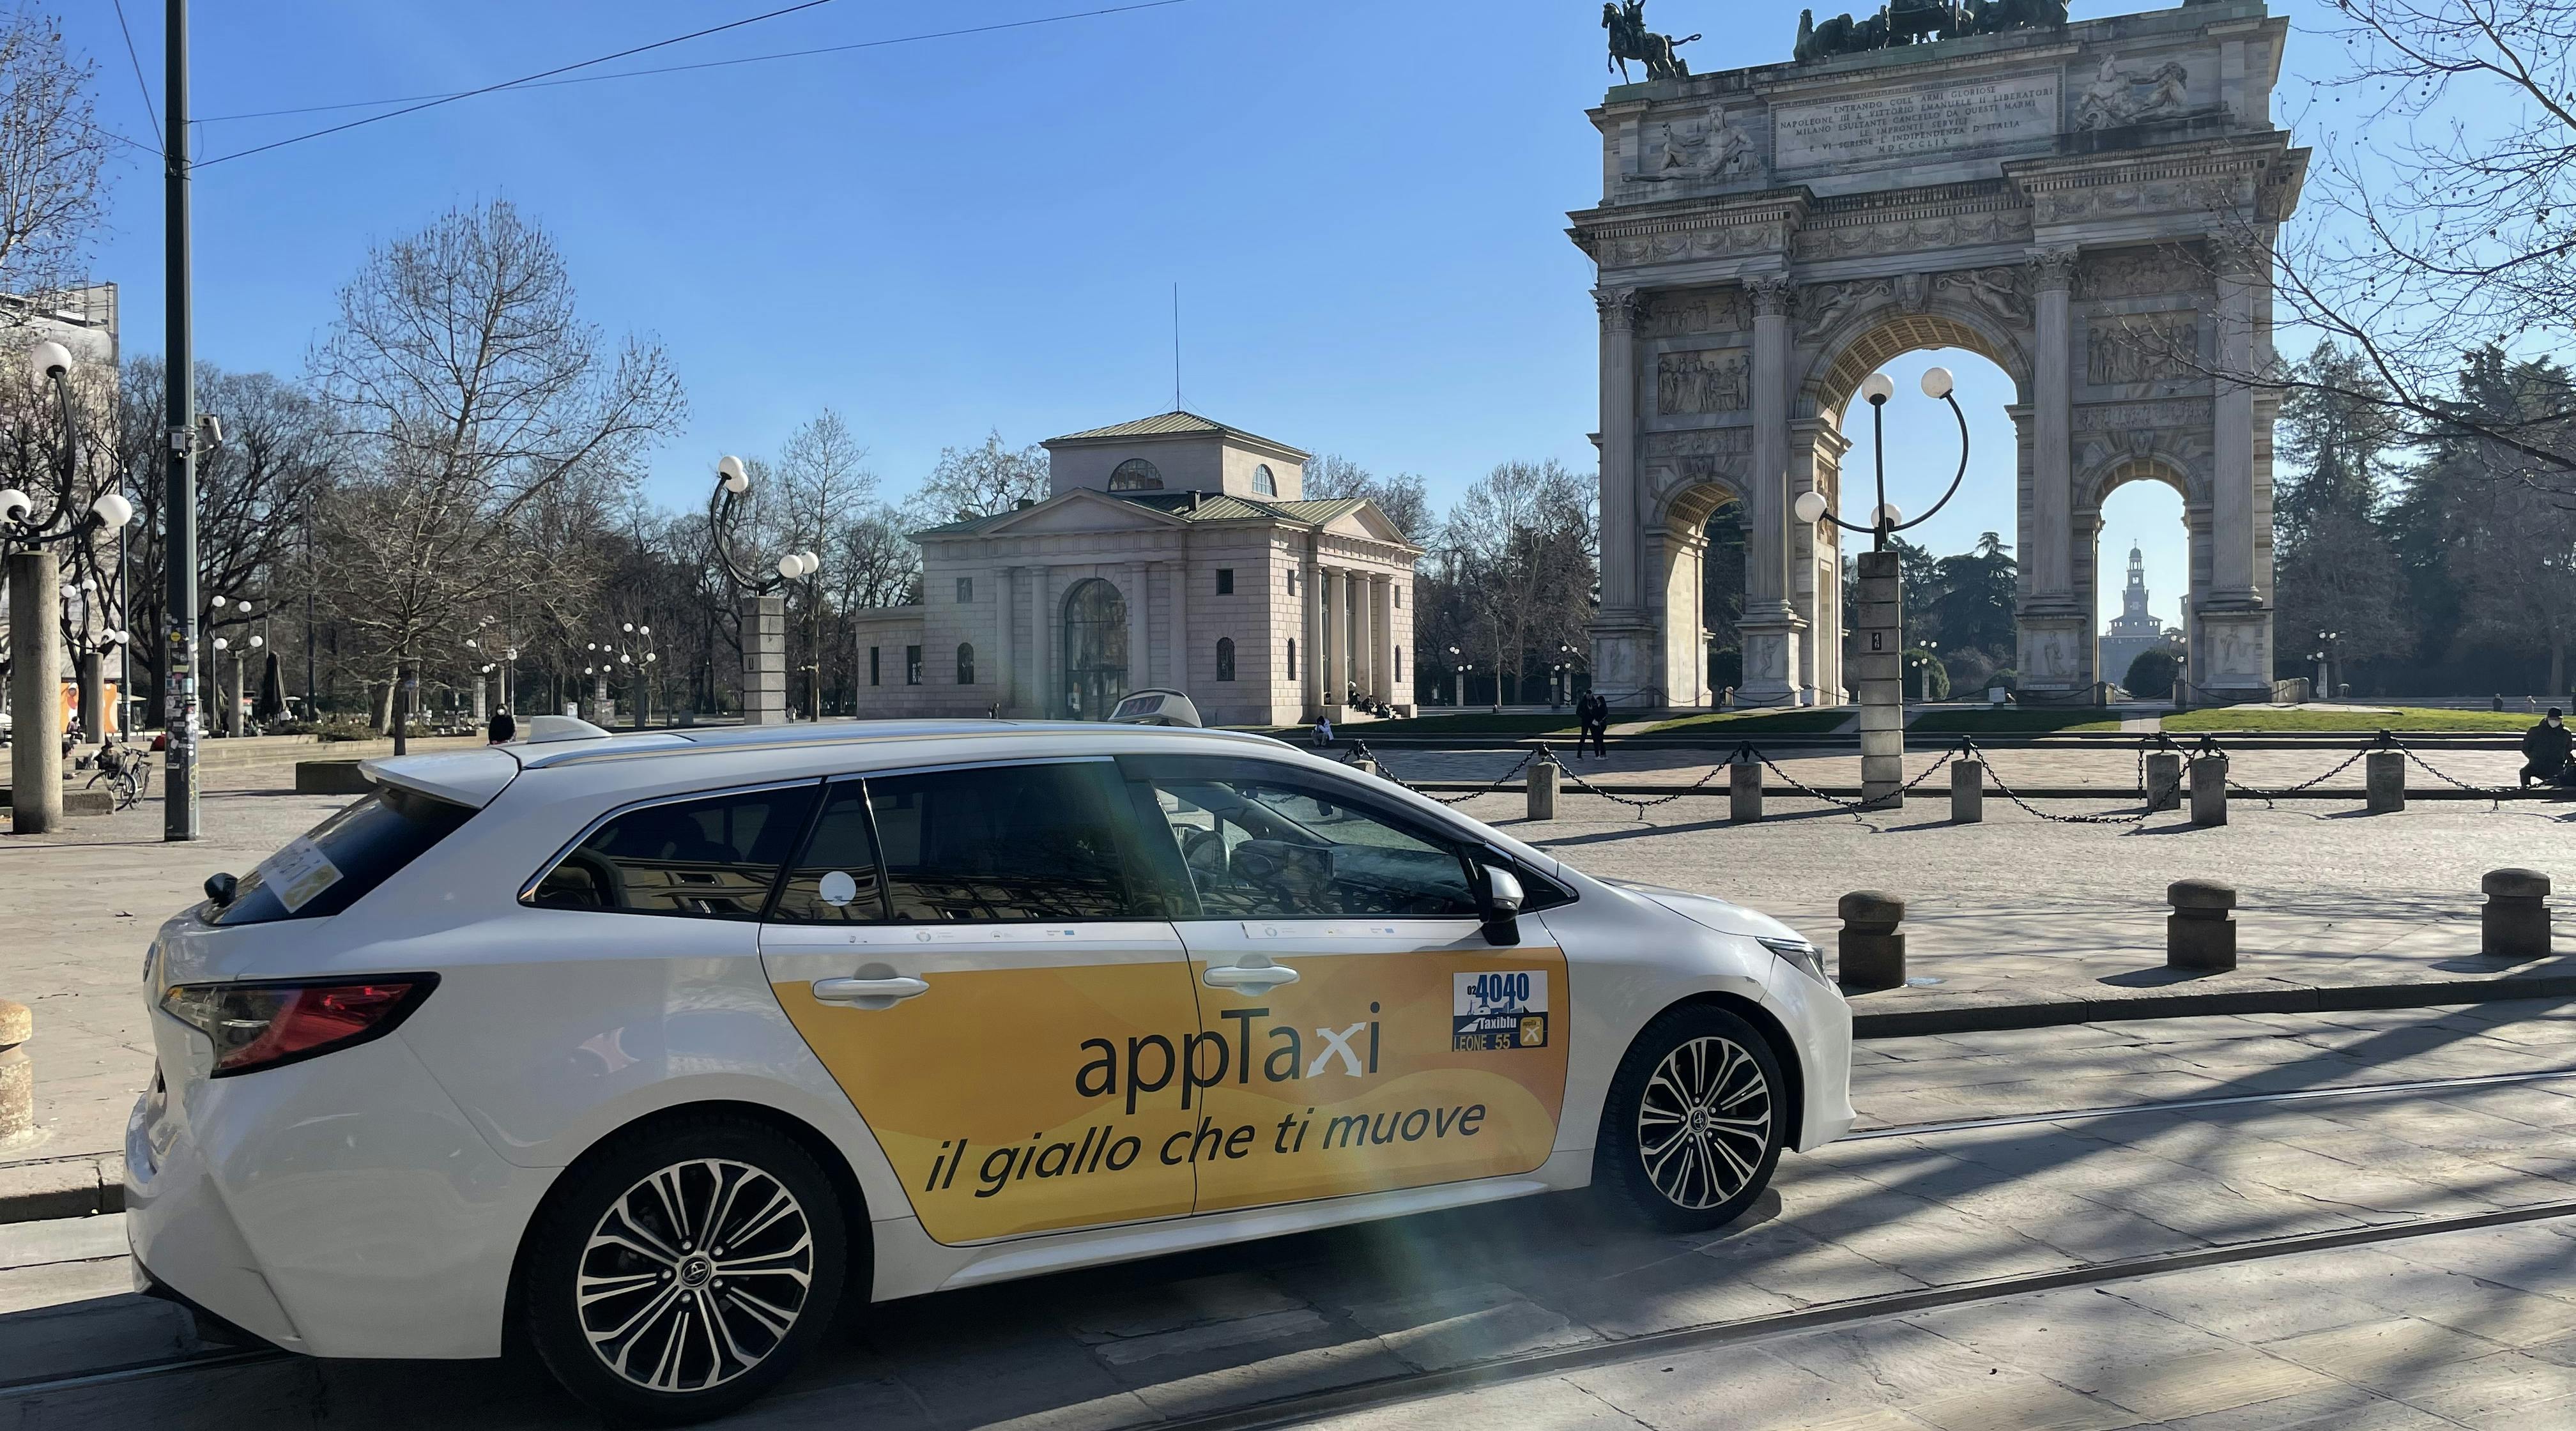 App taxi in Milan Sempione Park